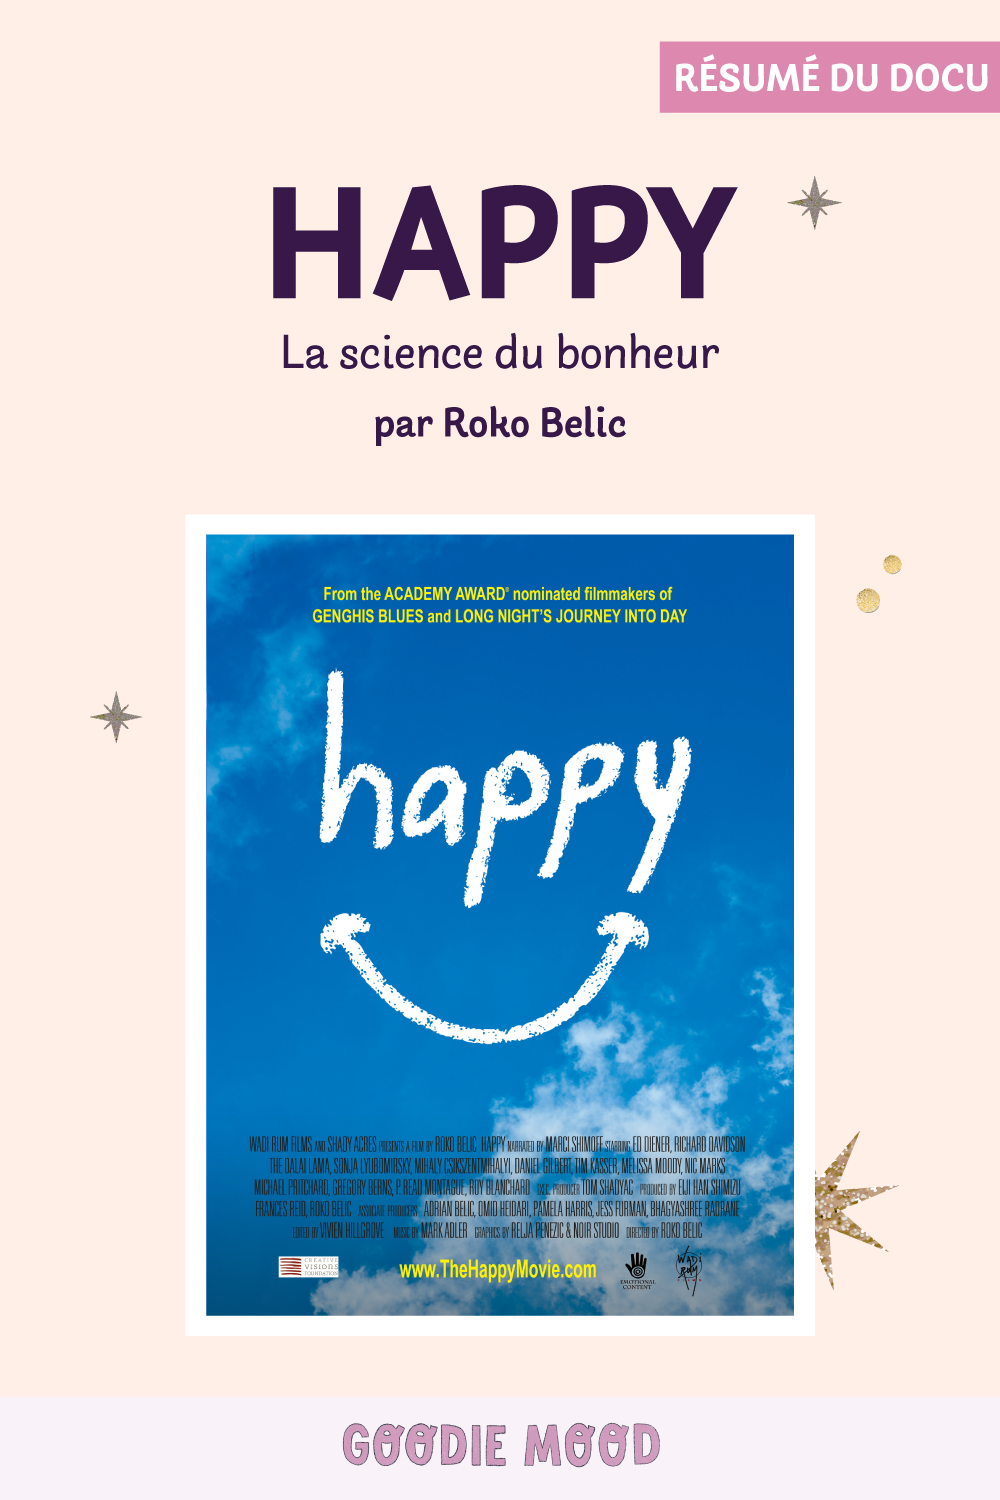 résumé du documentaire "Happy, la science du bonheur" par Roko Belic sur Goodie Mood
